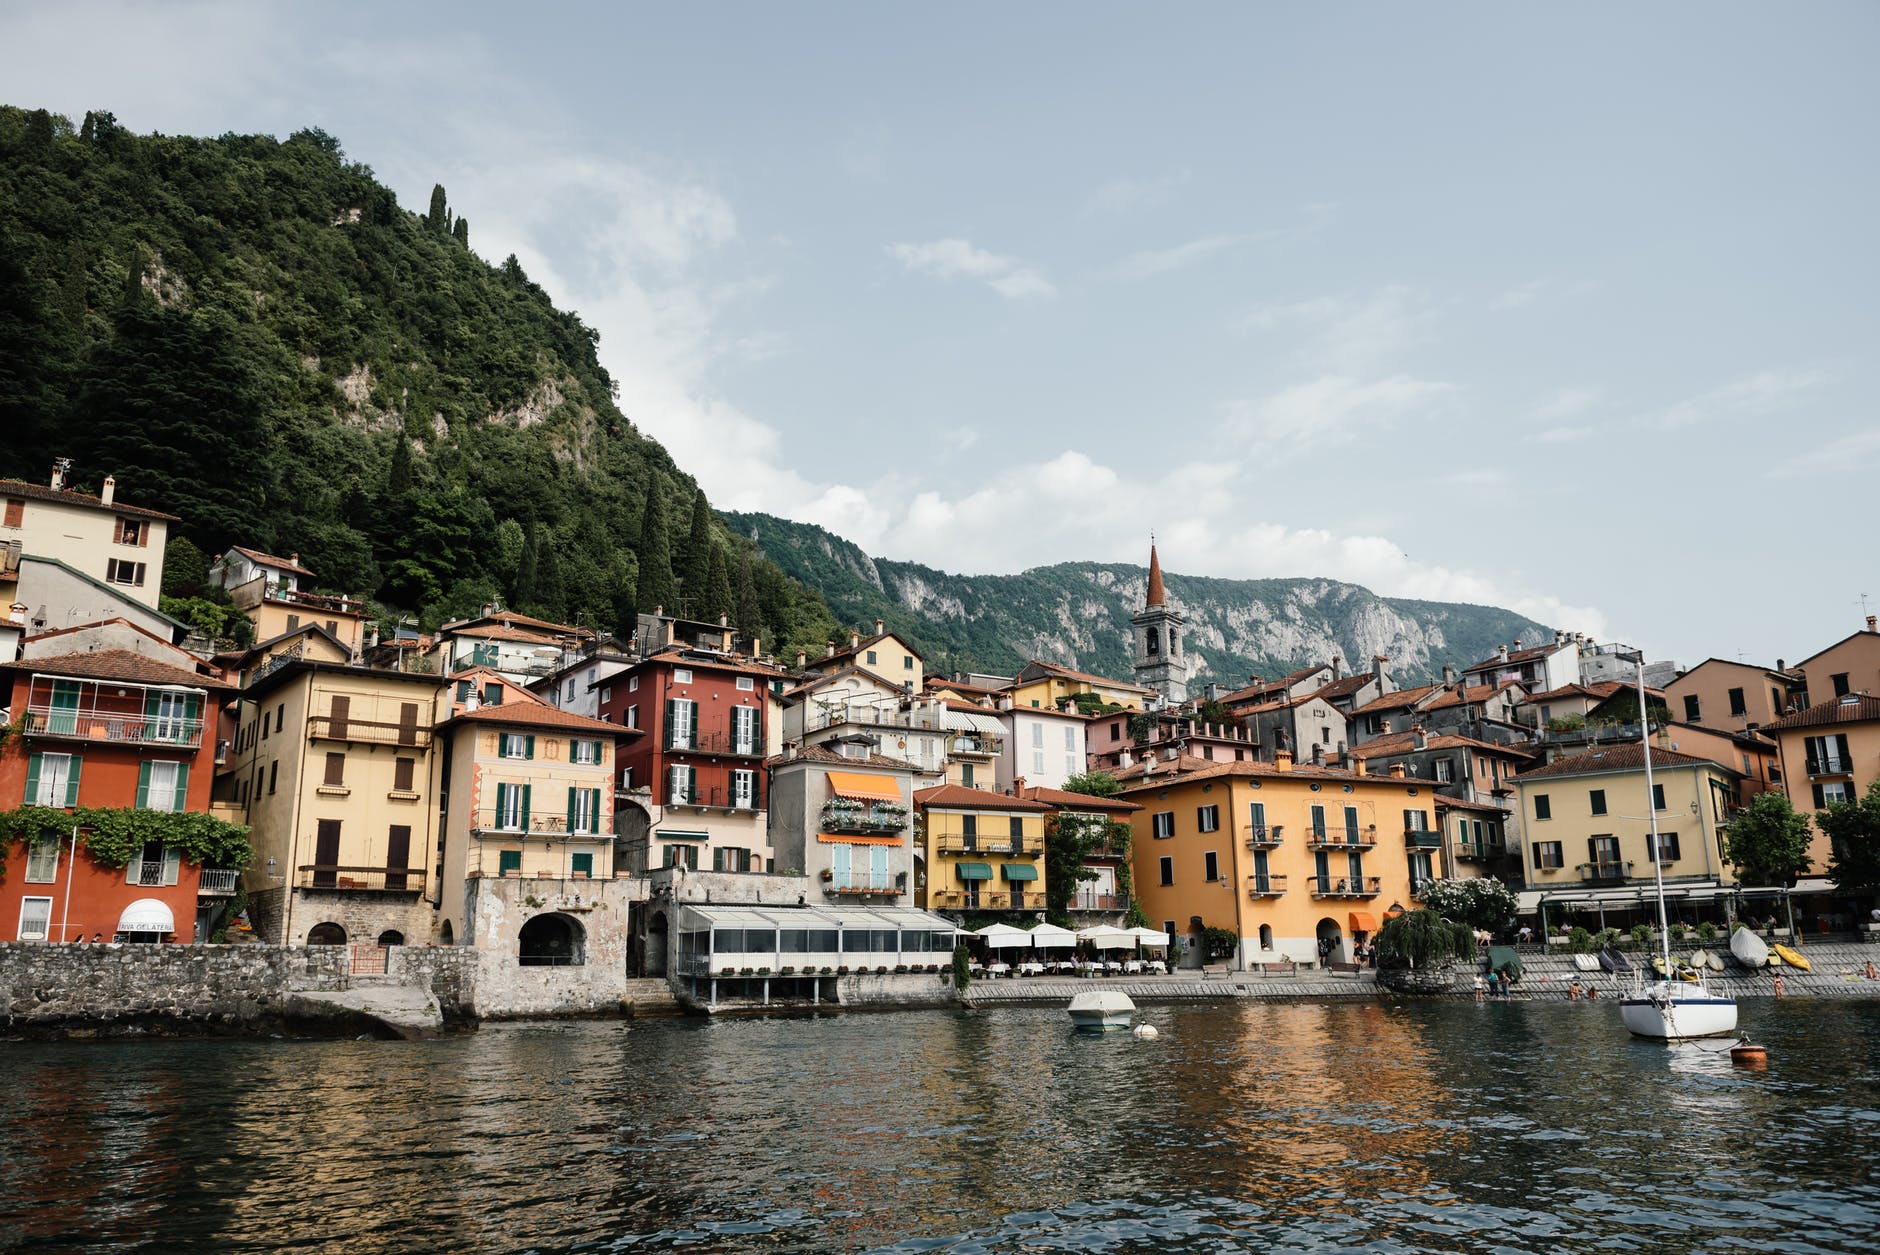 Jacob und Sarah verbrachten ihre Flitterwochen am Comer See in Italien. | Quelle: Pexels